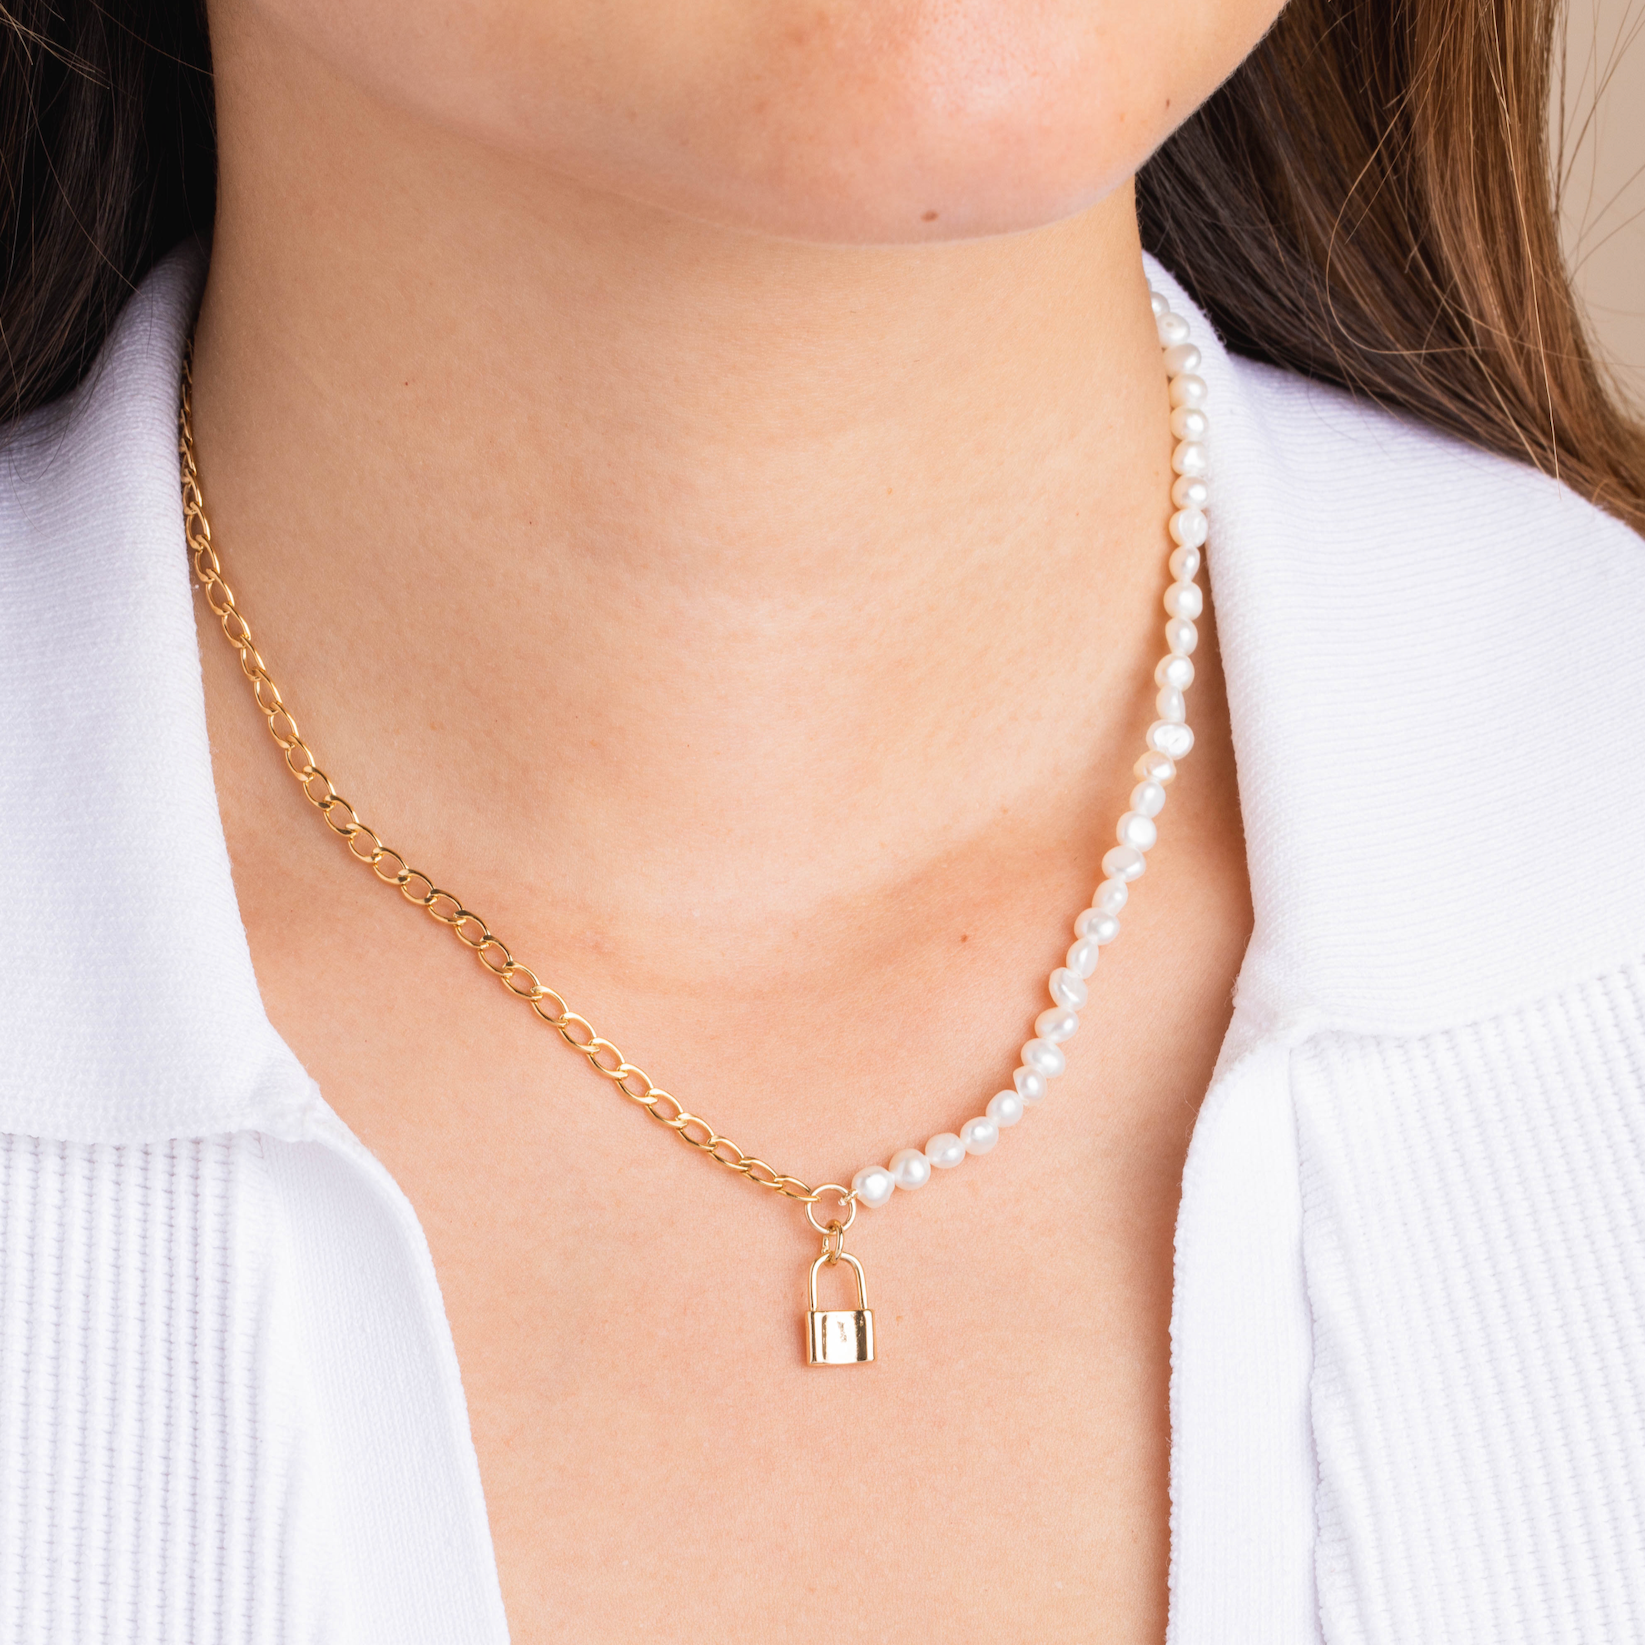 Jewelry Louis Vuitton Necklace Nanogram Pendant Gp Gold Silver